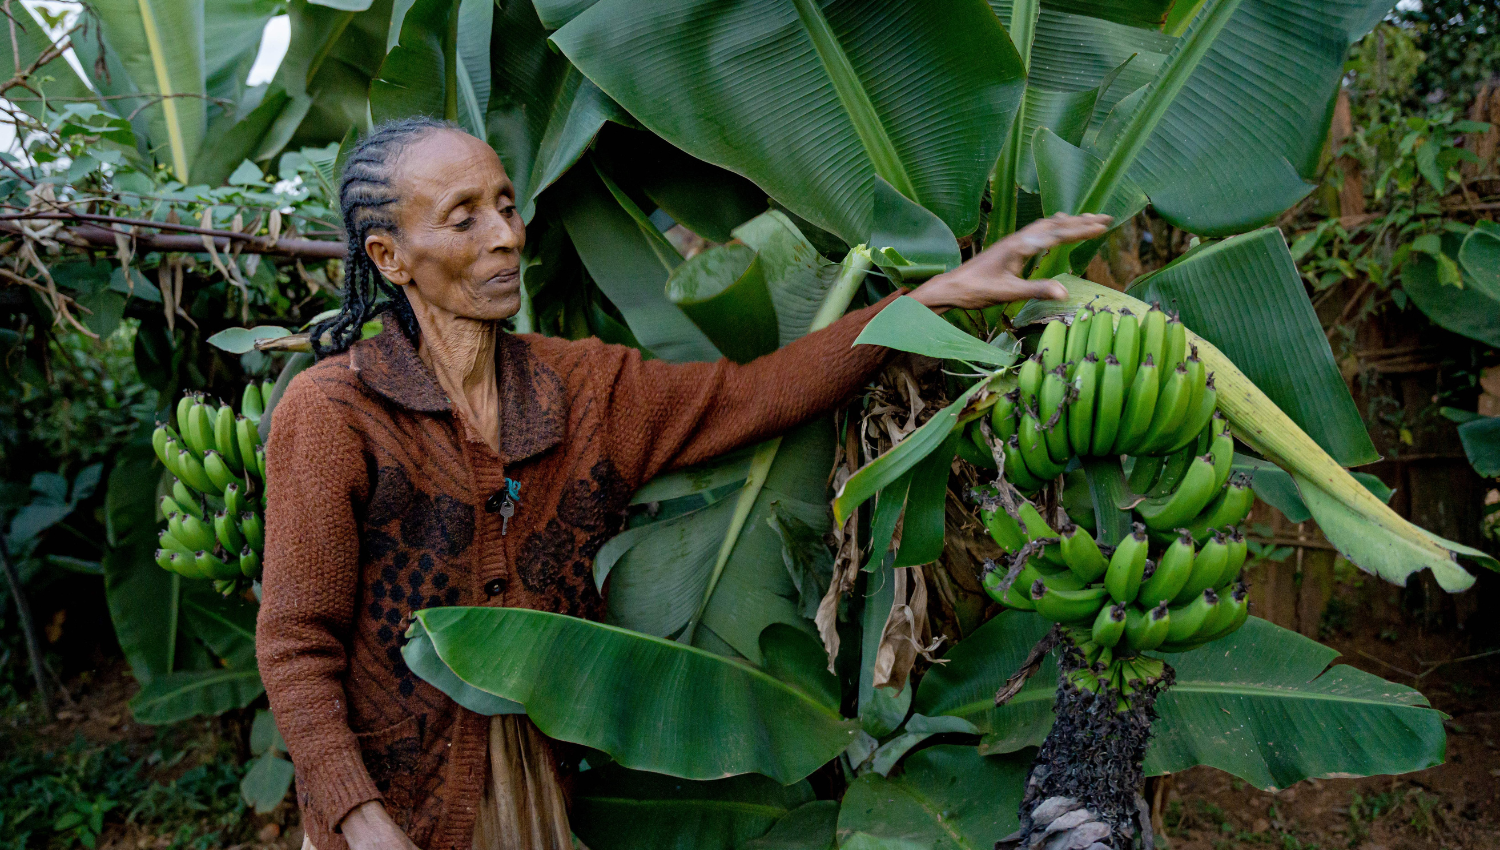 Ethiopia Banana Growing